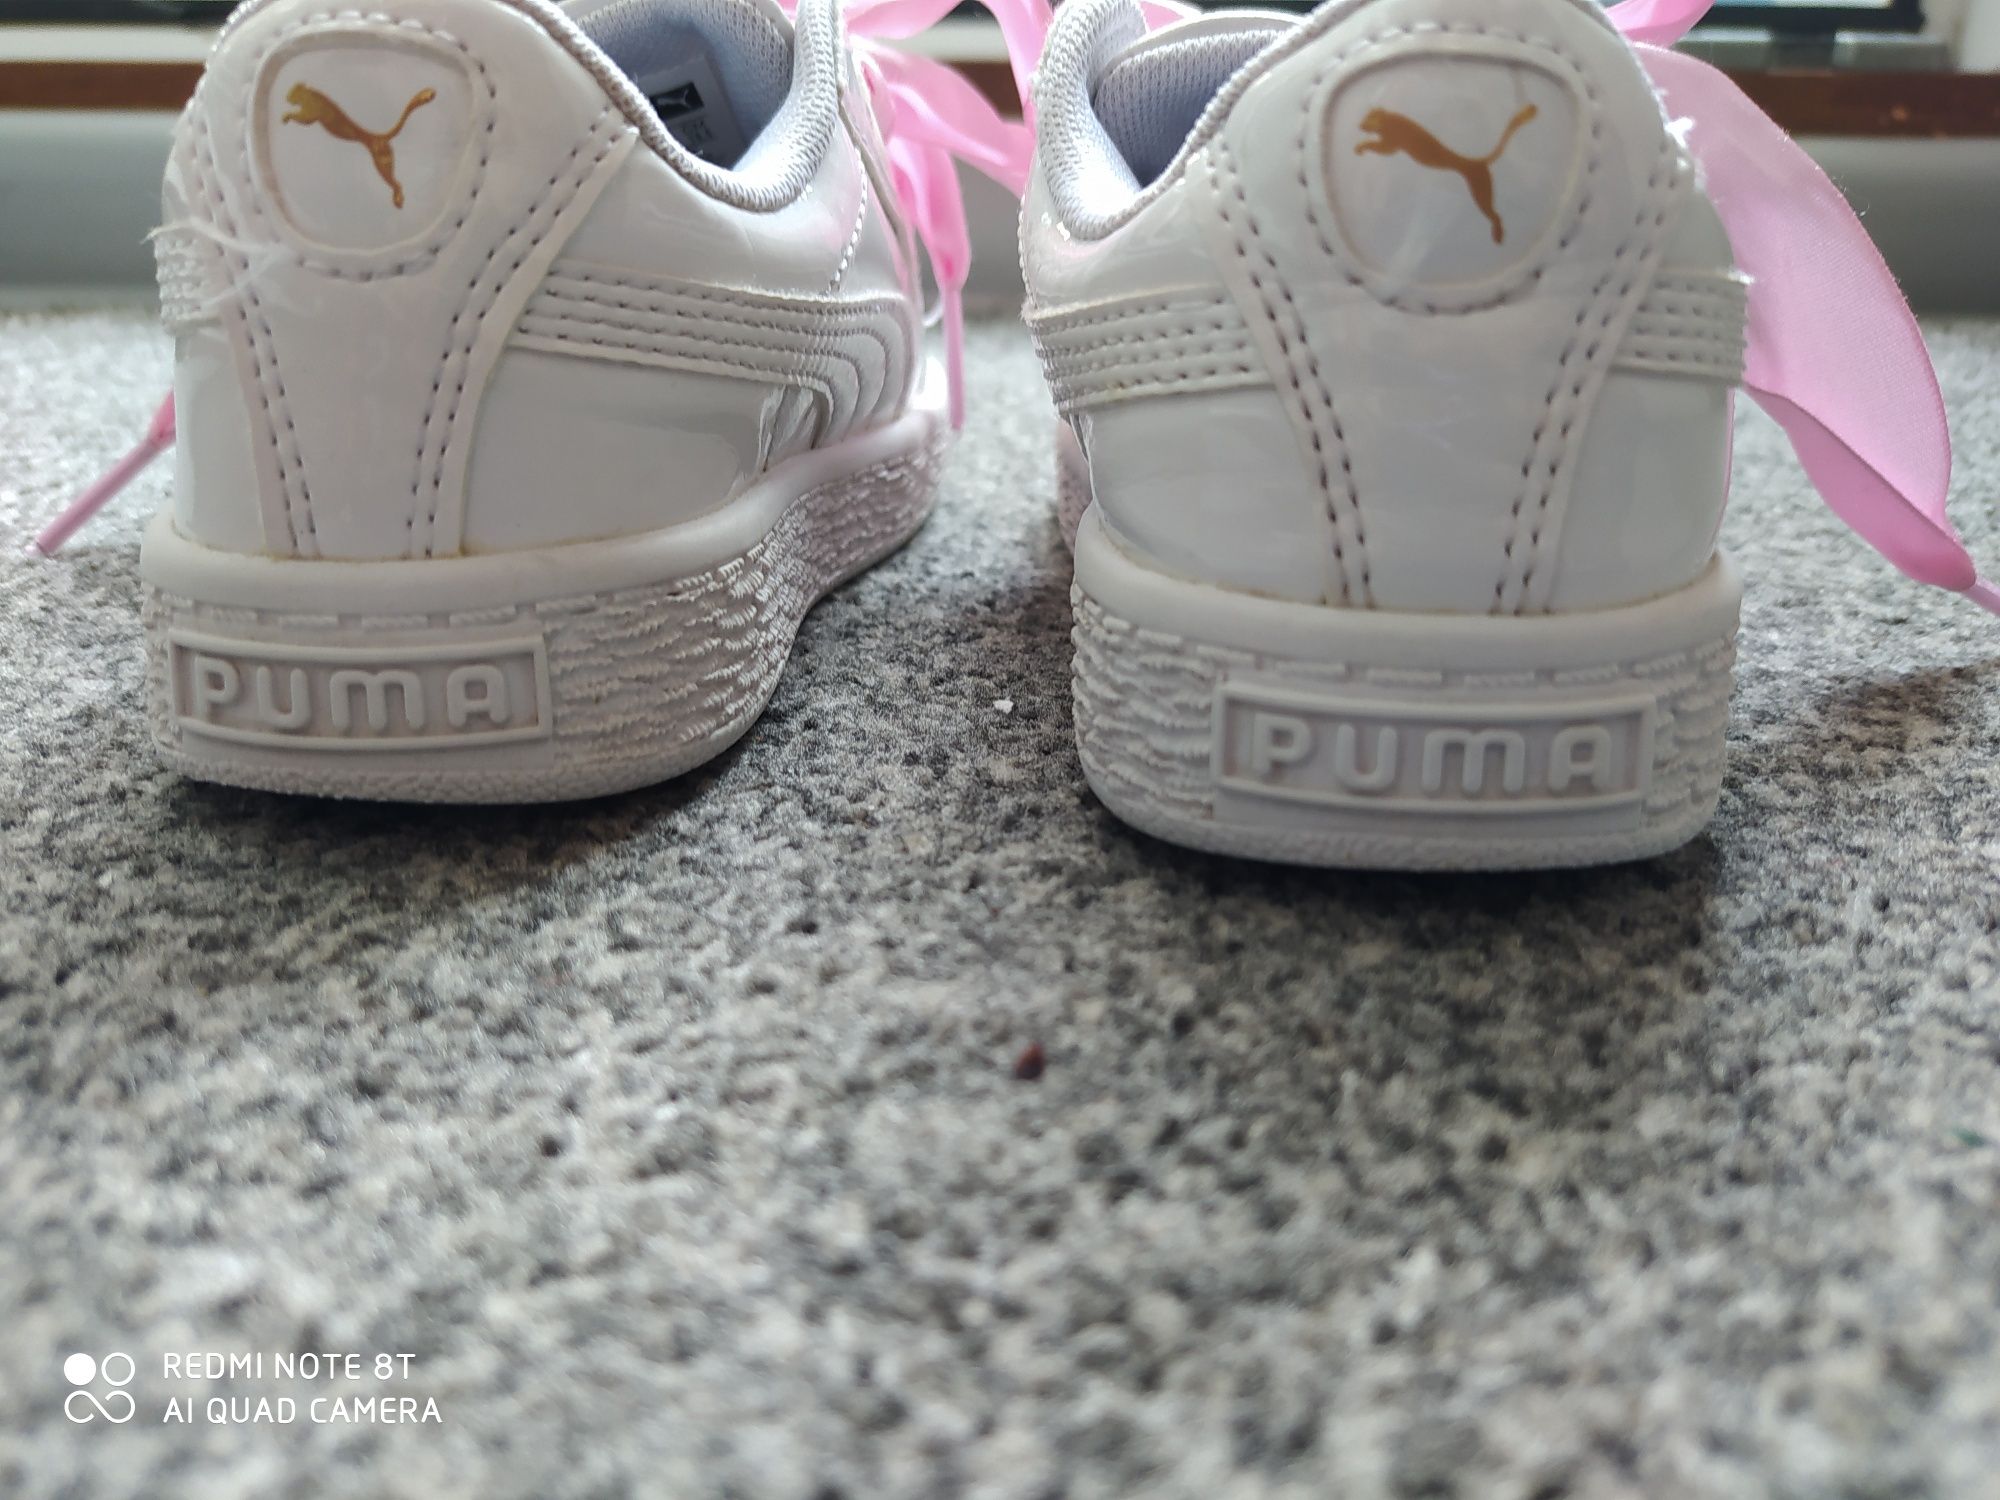 Adidaski lakierowane firmy Puma